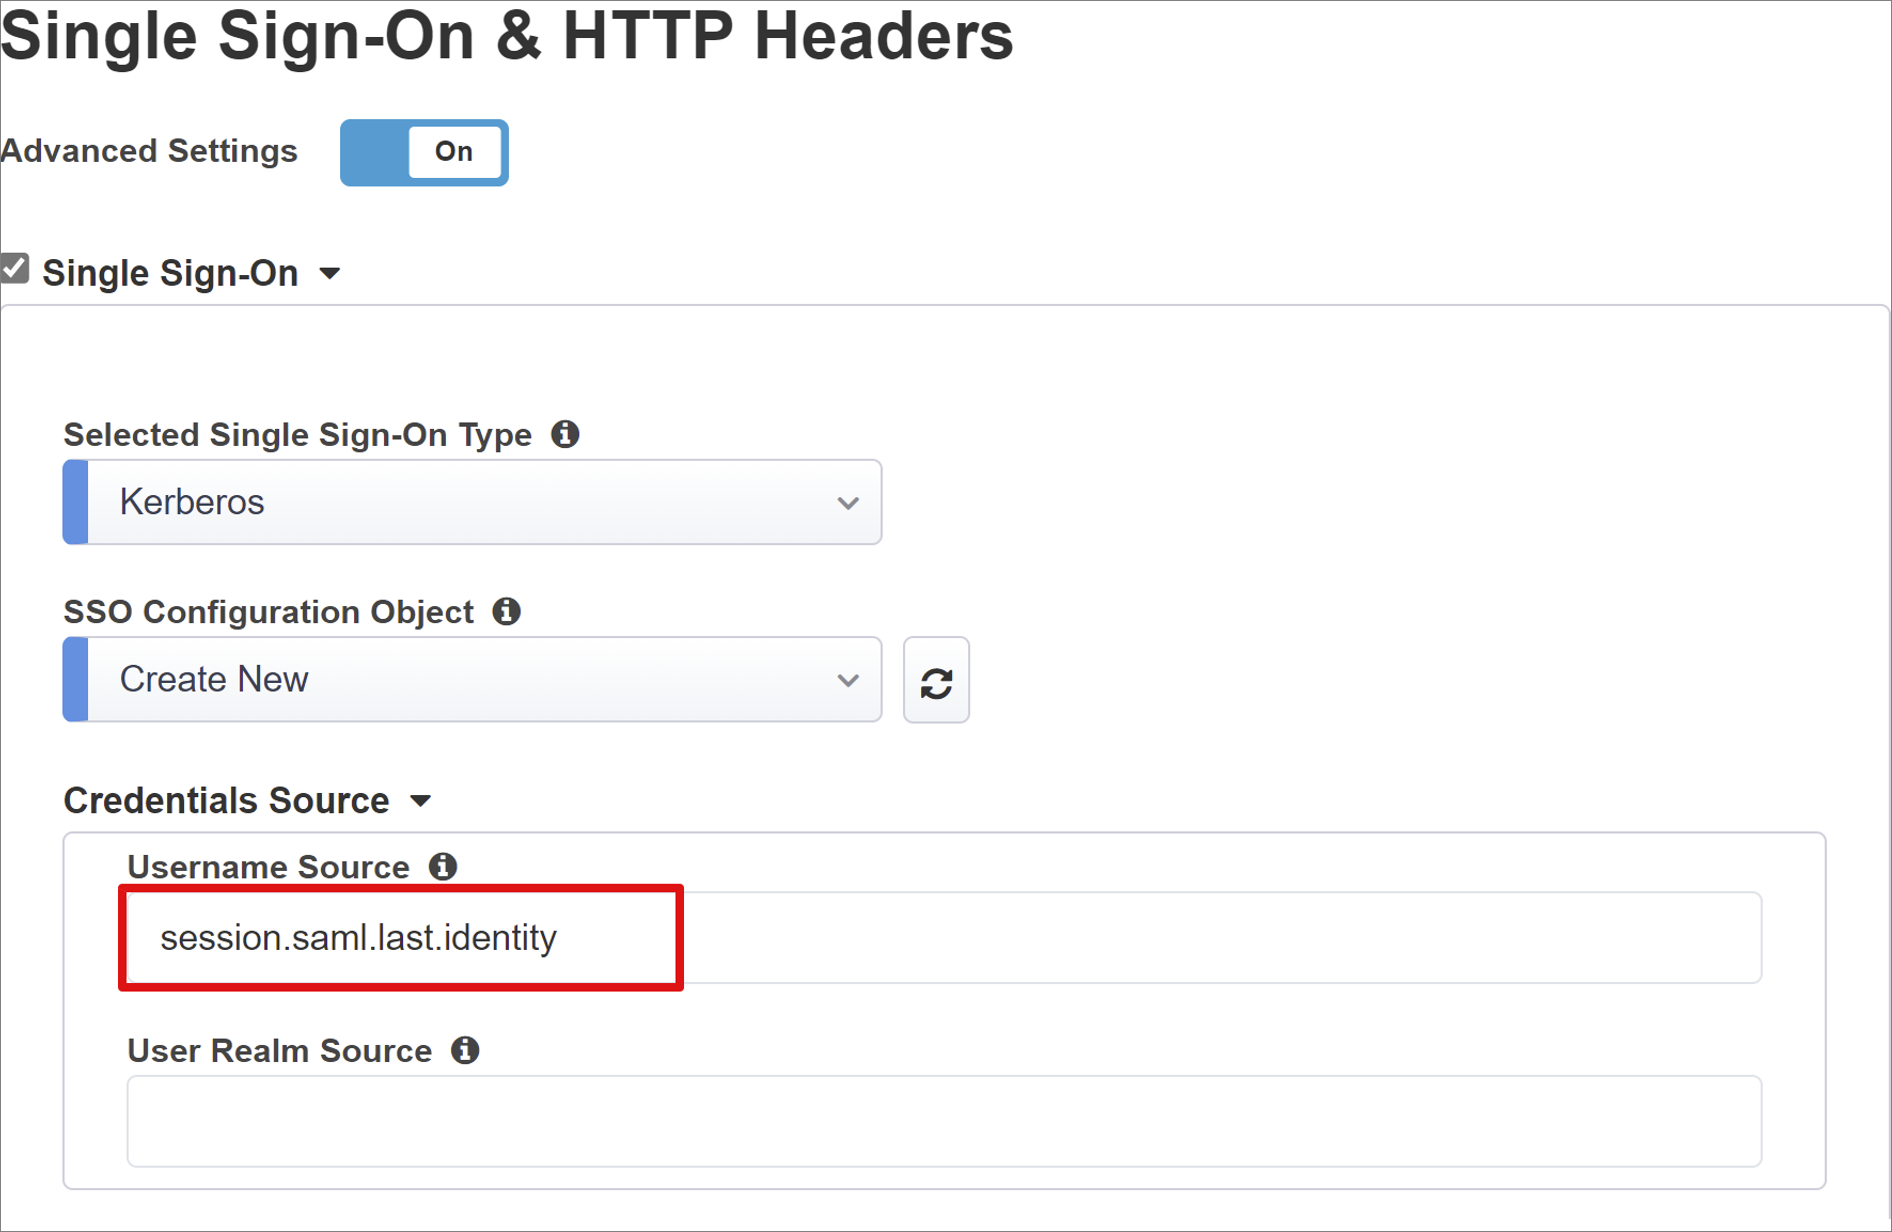 Снимок экрана: запись источника имени пользователя для заголовков Единый вход и HTTP.